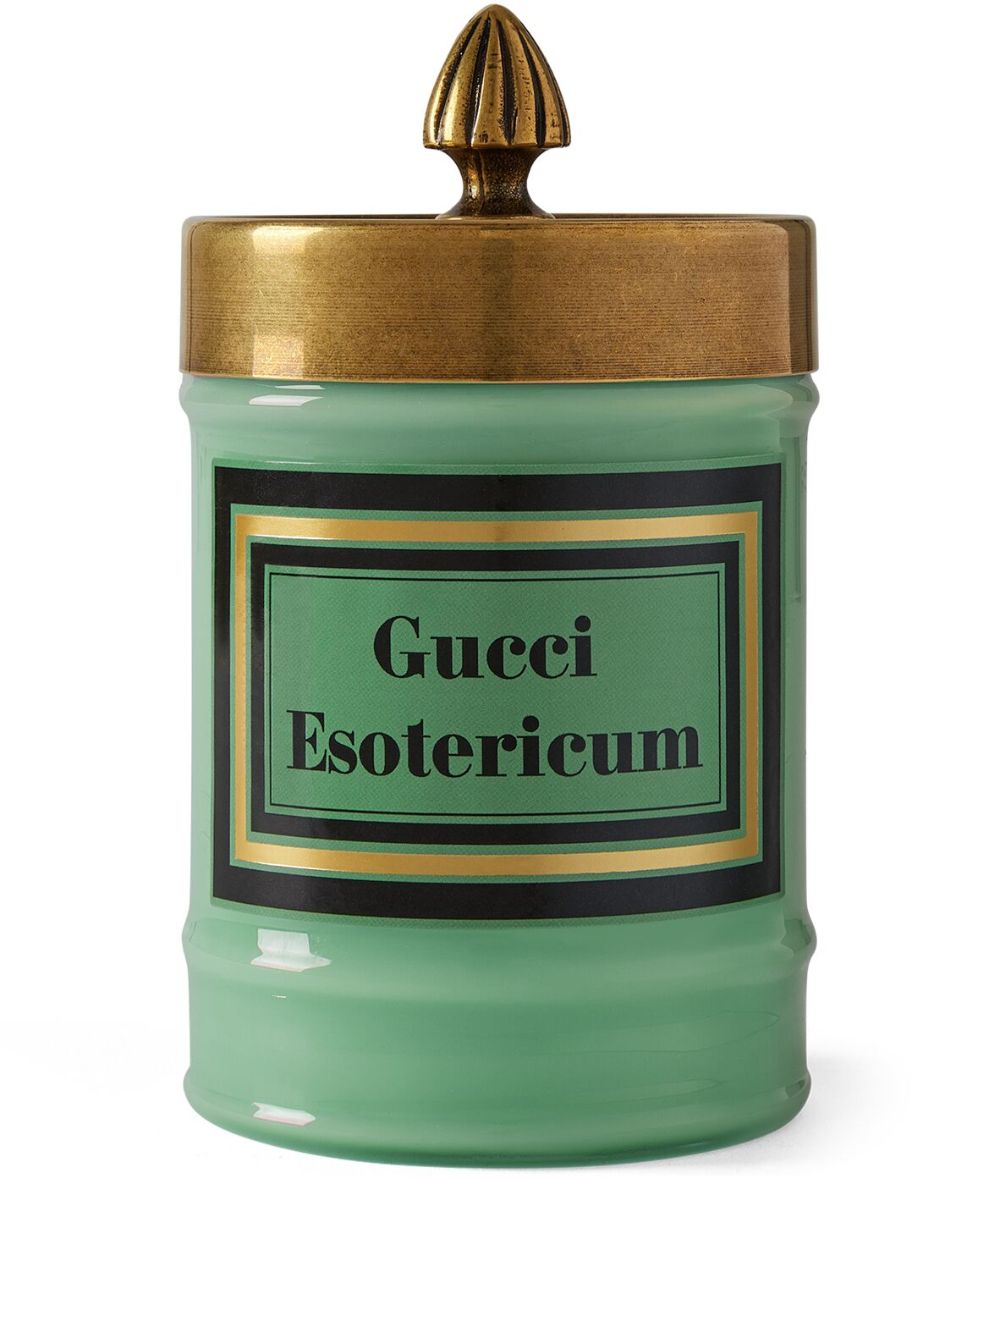 Gucci Esotericum Duftkerze - Grün von Gucci